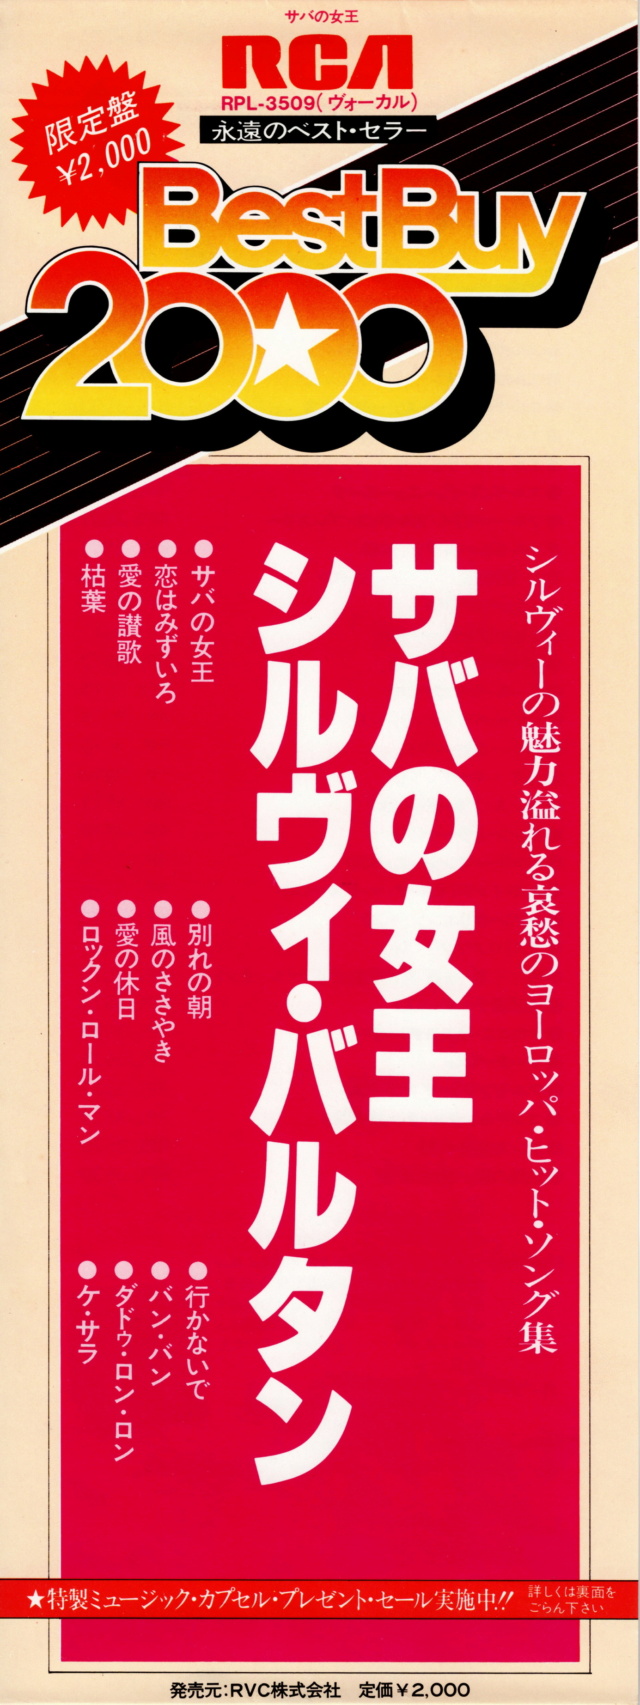 Discographie Japonaise - 4ème partie (33 T COMPILATION) - Page 15 Jpn_rp57